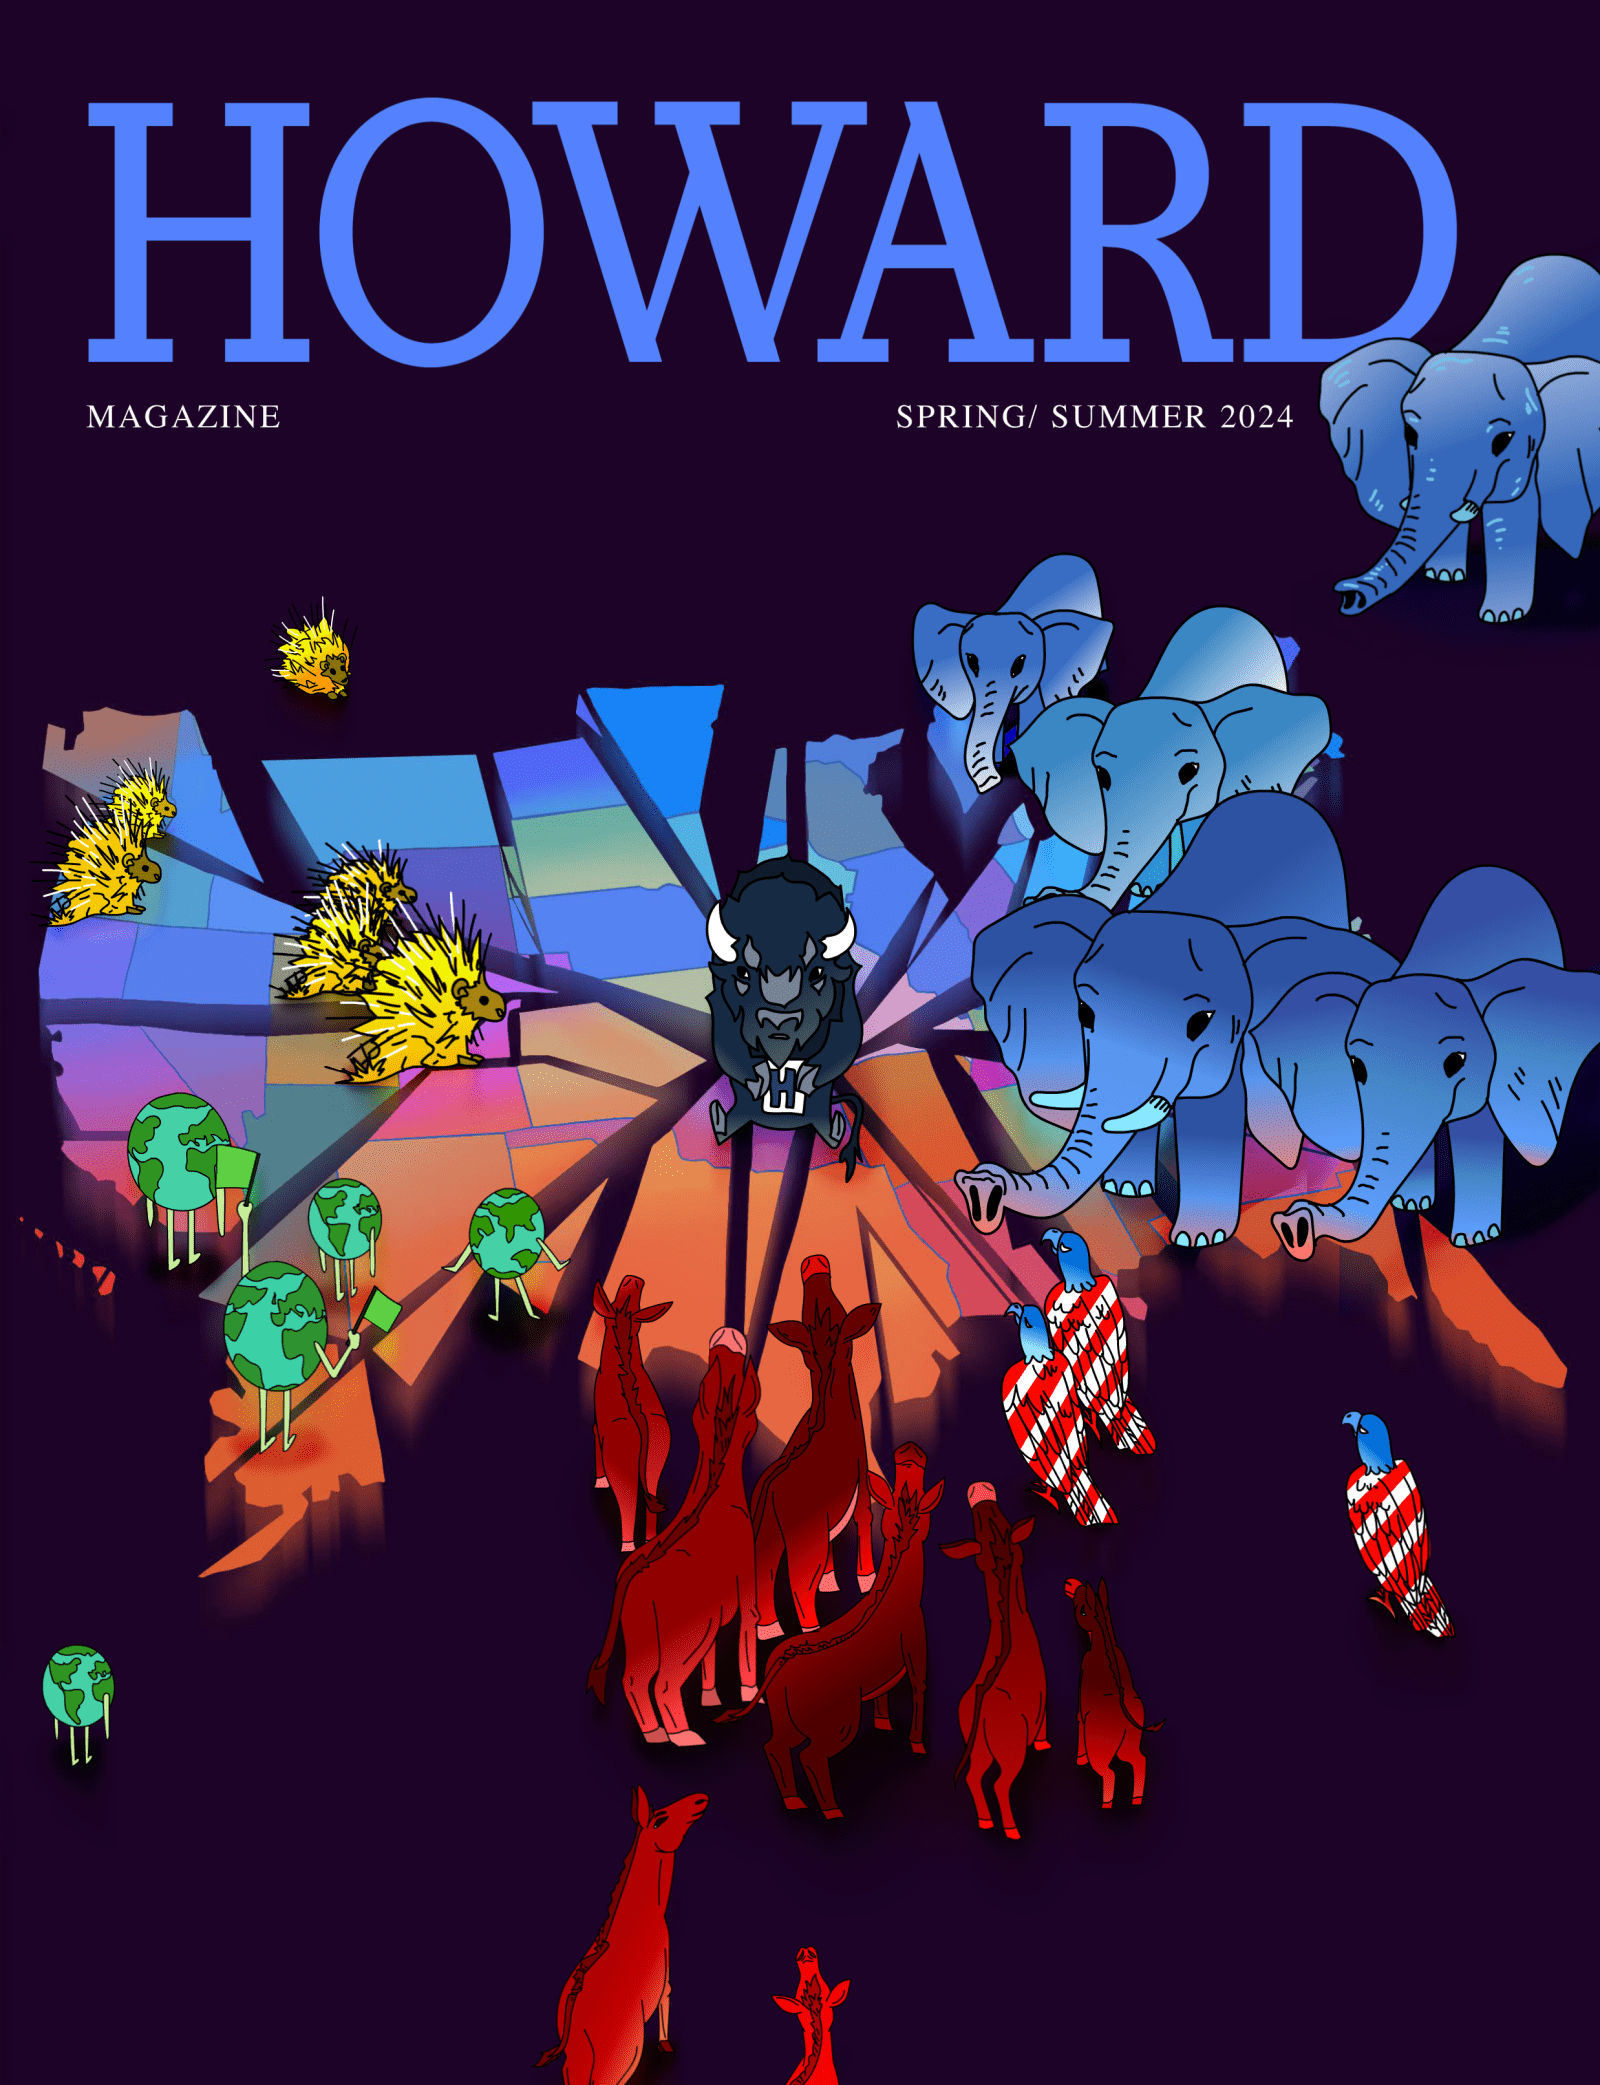 Howard Magazine spring summer 2024 cover